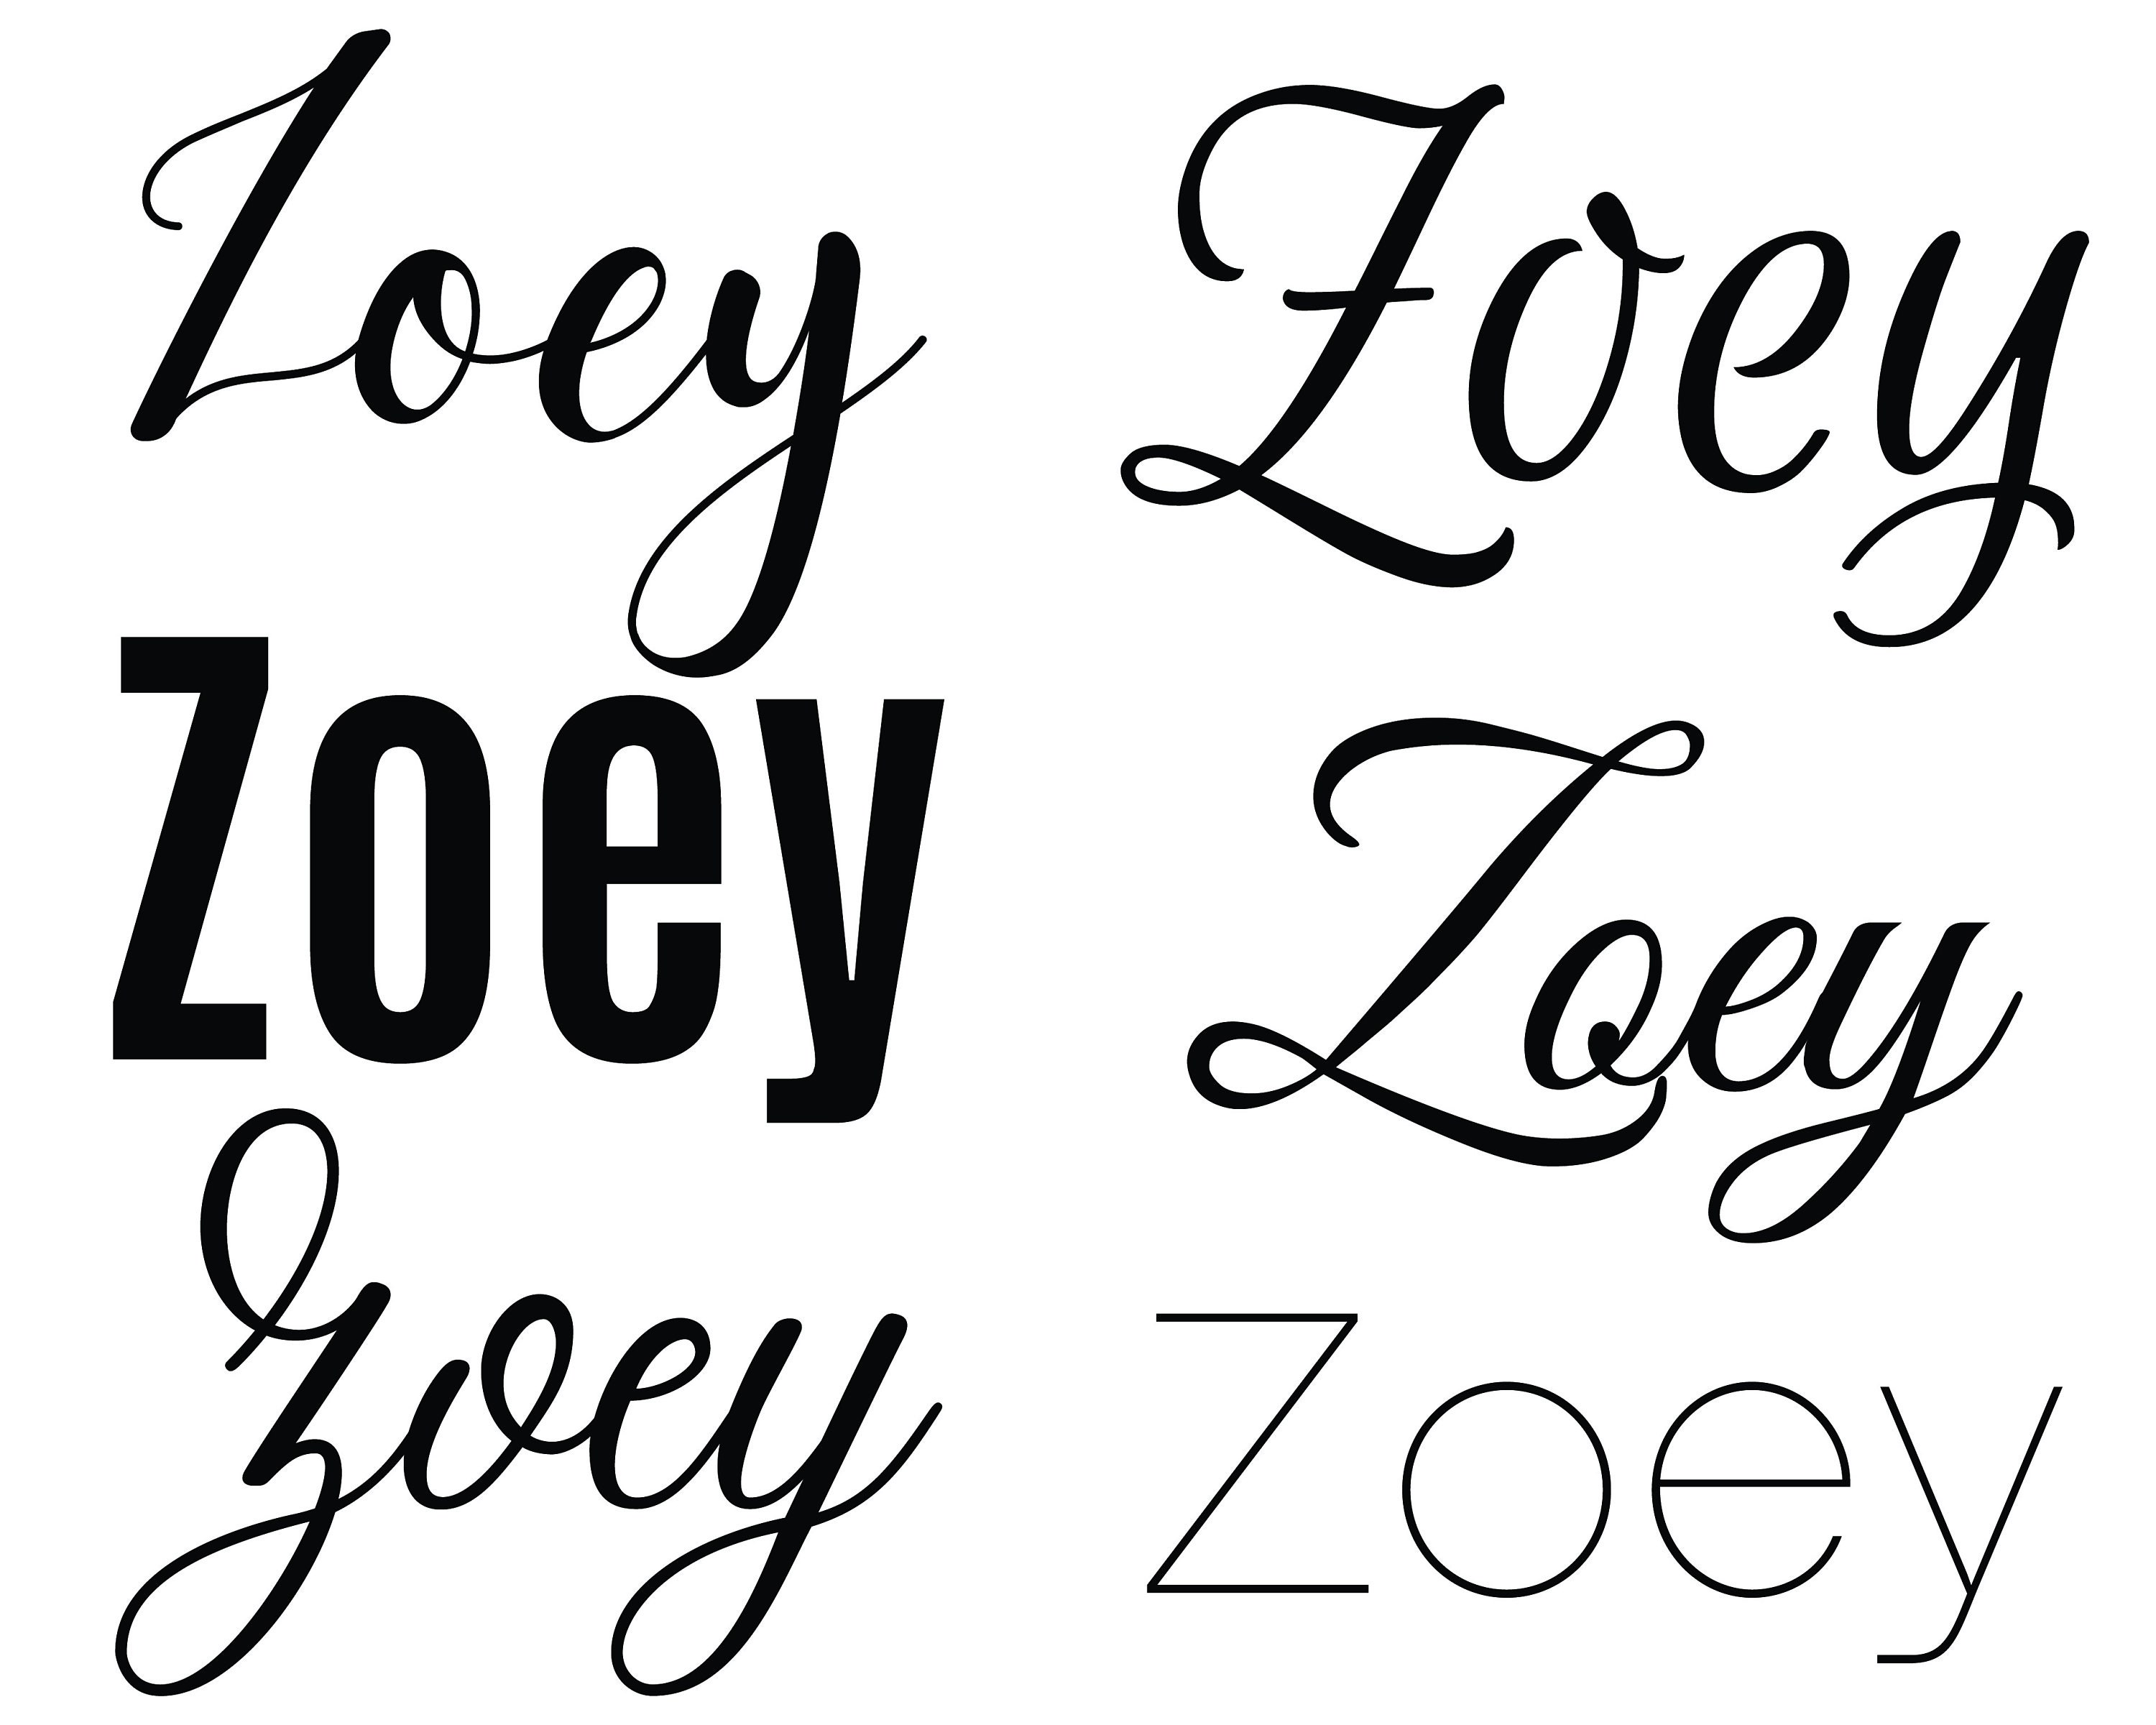 Zoeyxzoey